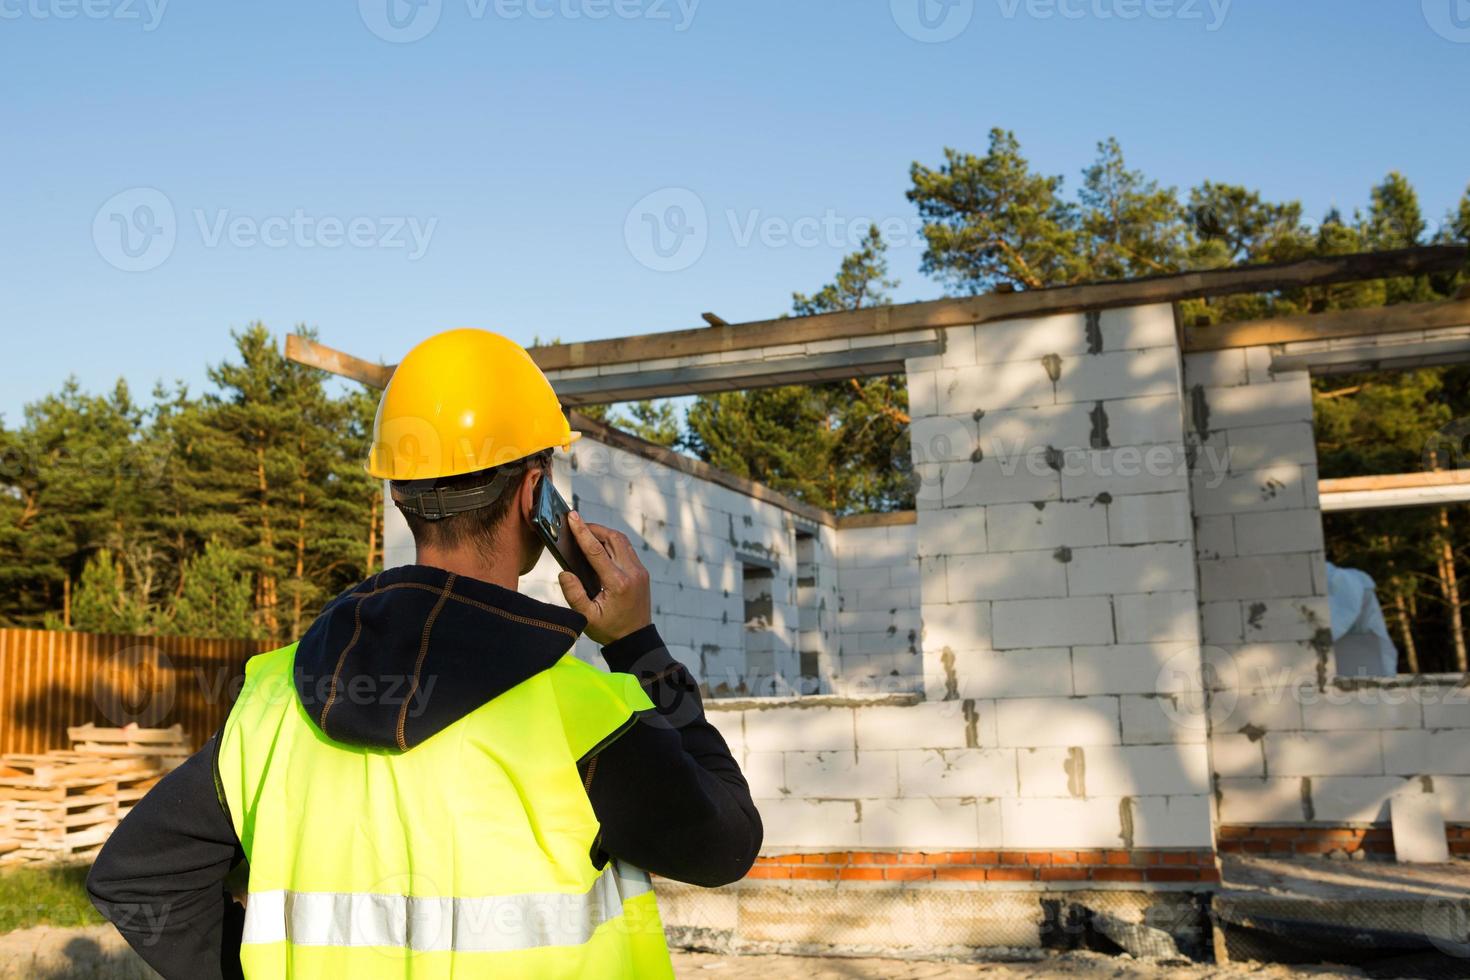 Bauarbeiter spricht auf einem Smartphone in einem gelben Hardhat